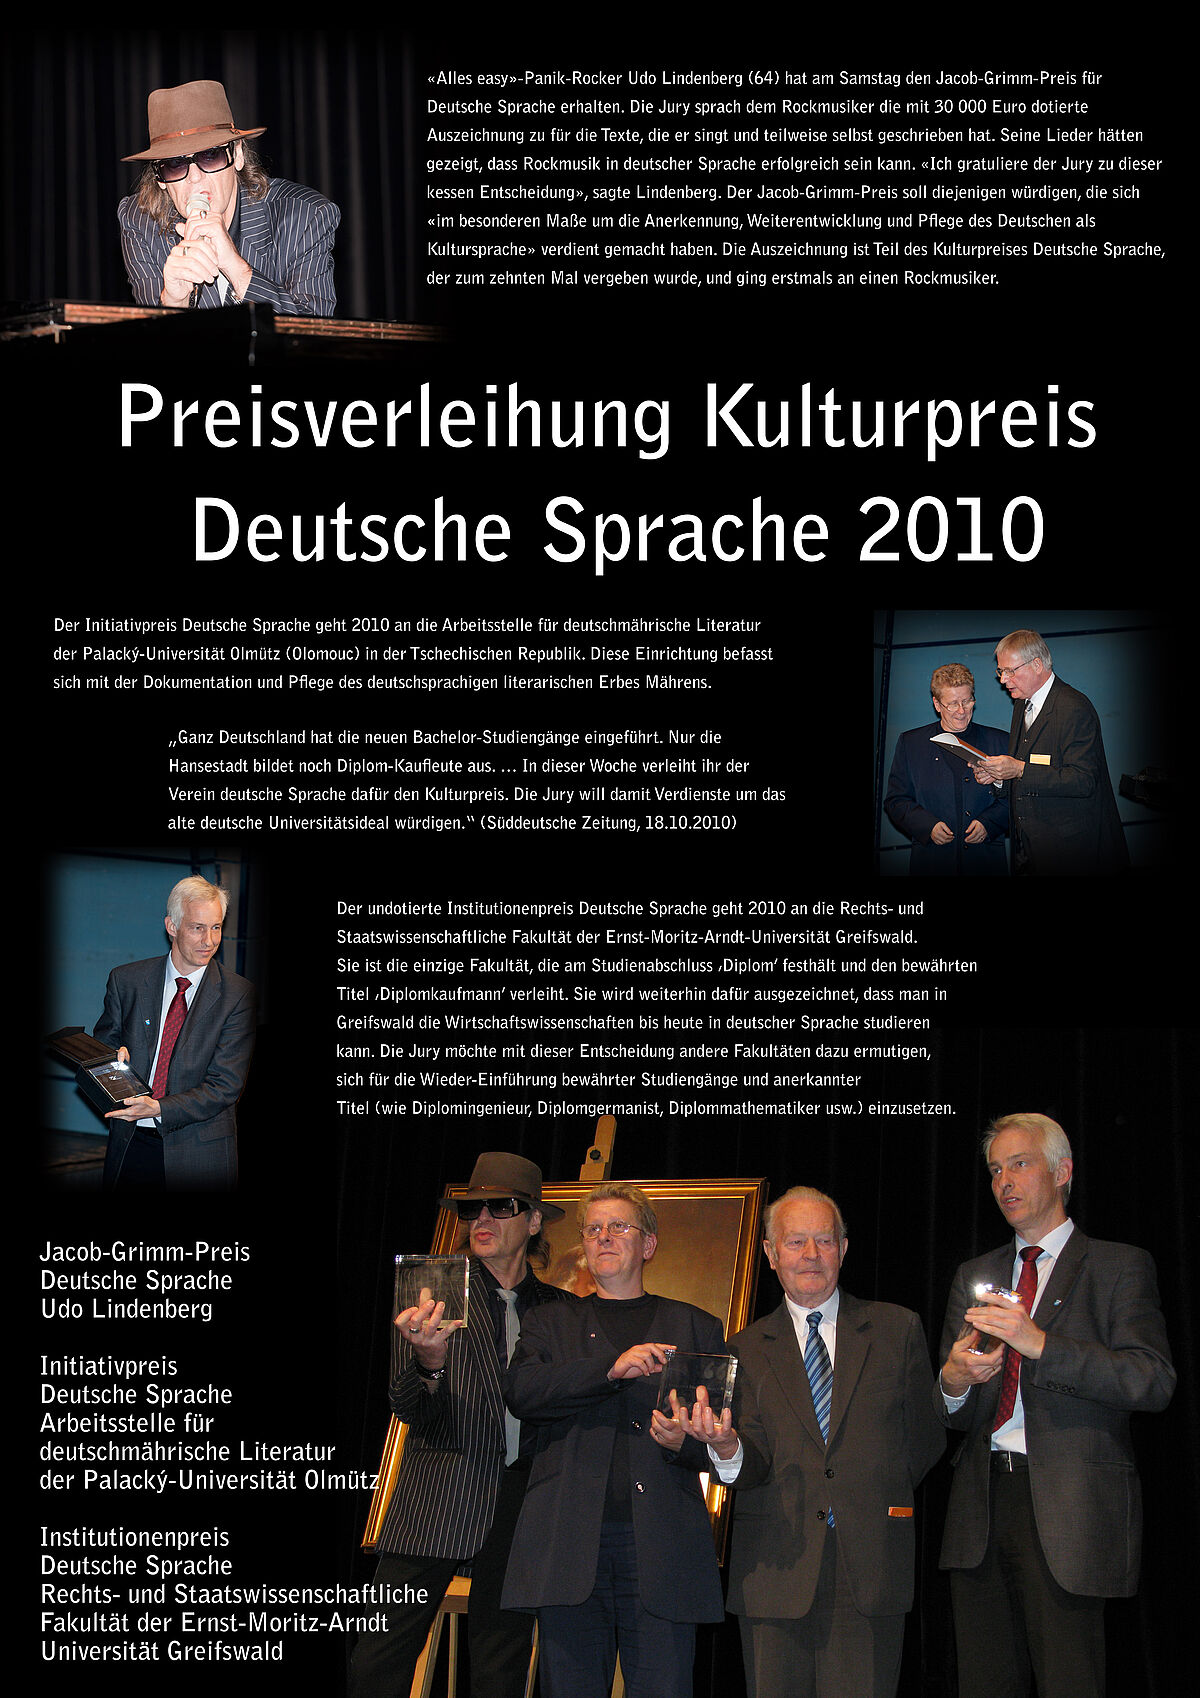 Preisverleihung Kulturpreis Deutsche Sprache 2010